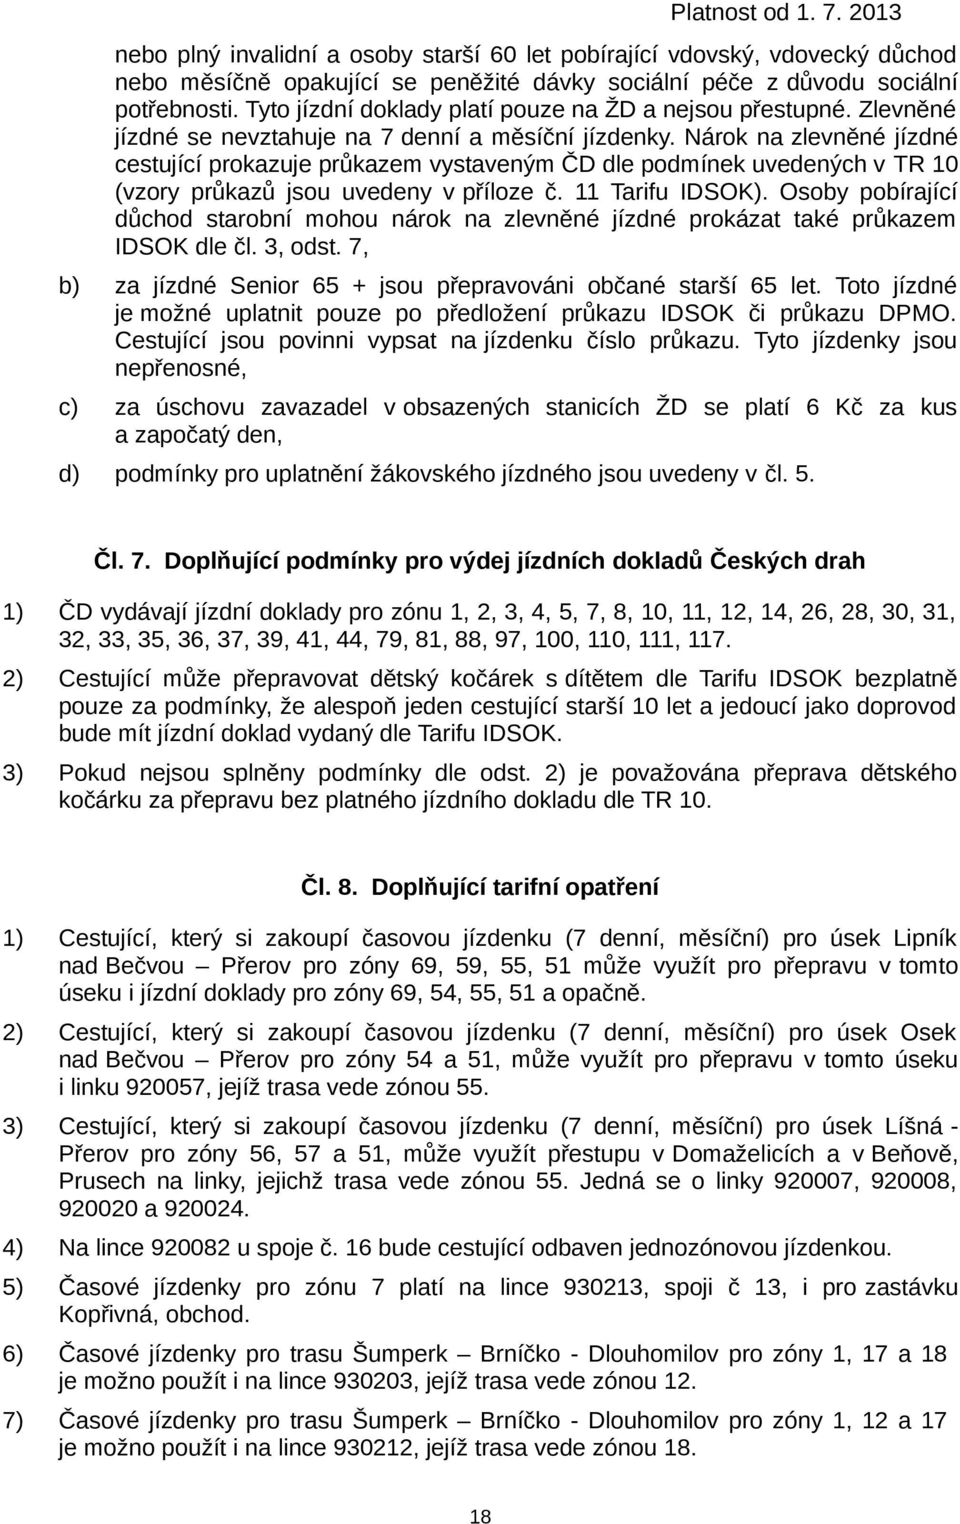 Nárok na zlevněné jízdné cestující prokazuje průkazem vystaveným ČD dle podmínek uvedených v TR 10 (vzory průkazů jsou uvedeny v příloze č. 11 Tarifu IDSOK).